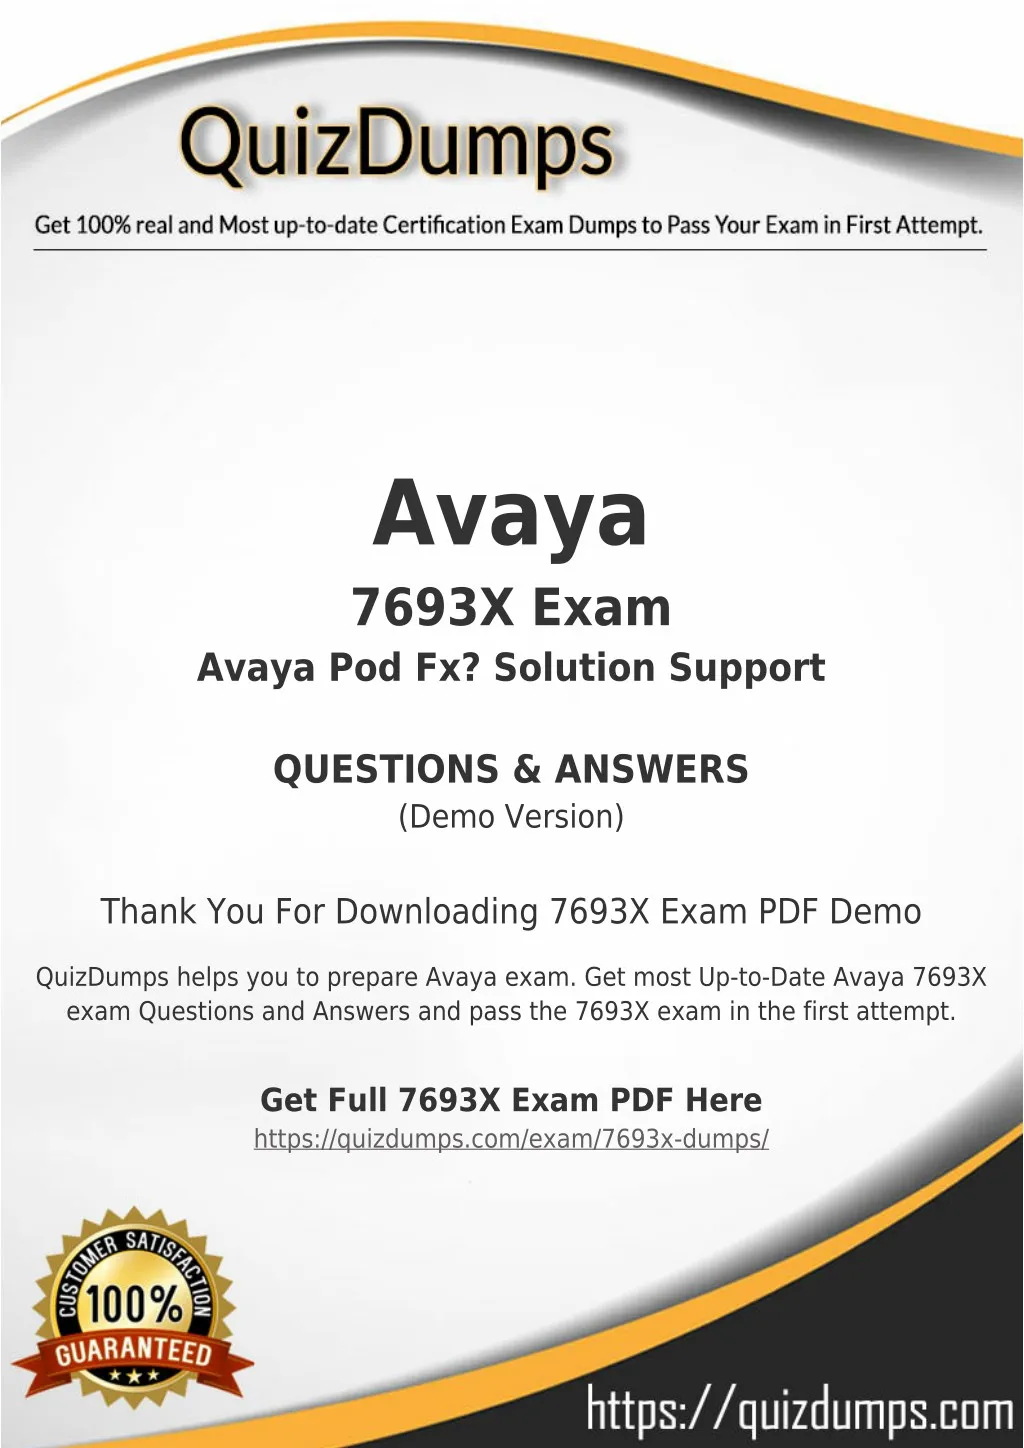 avaya 7693x exam avaya pod fx solution support